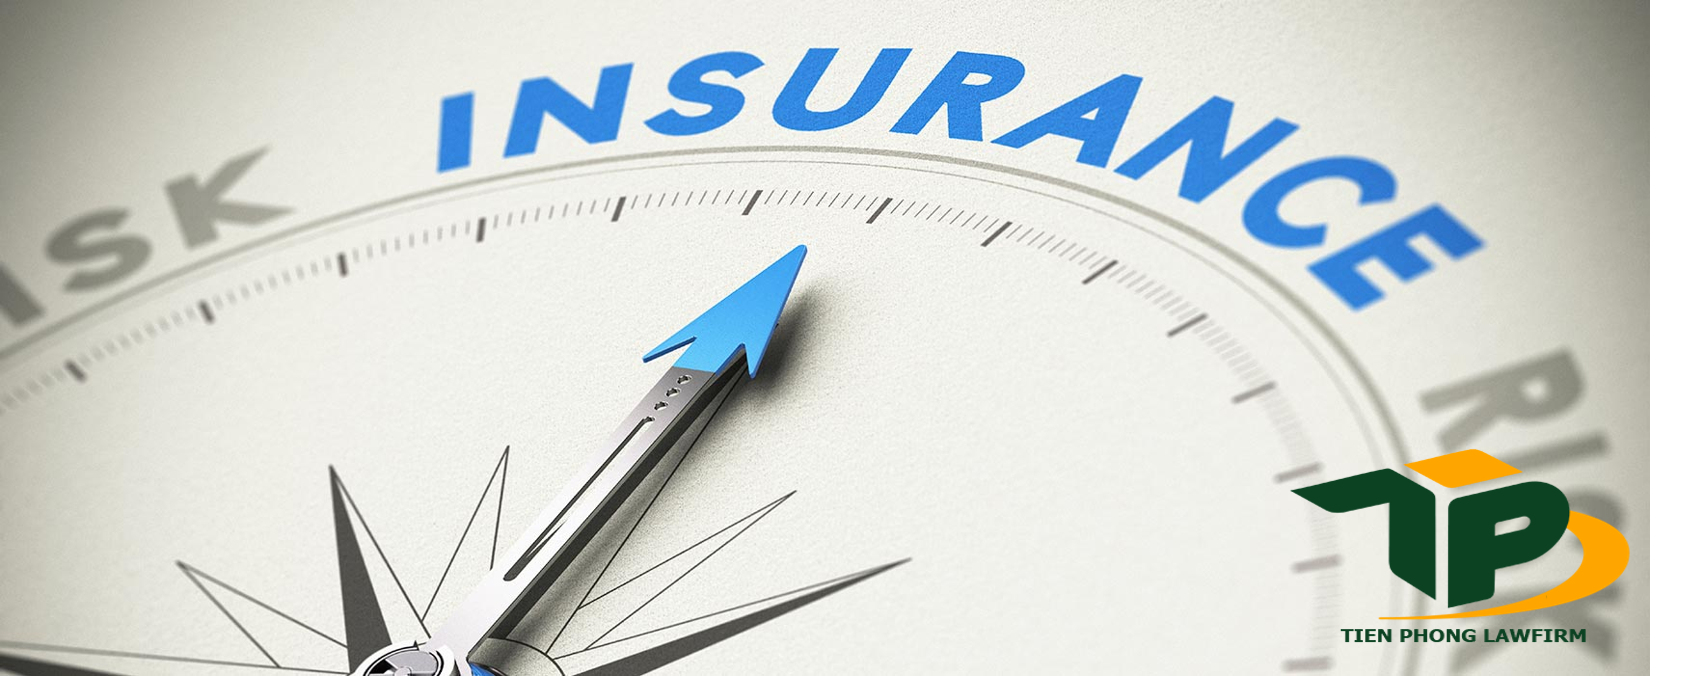 Pháp luật quy định như thế nào về hình thức kinh doanh bảo hiểm?